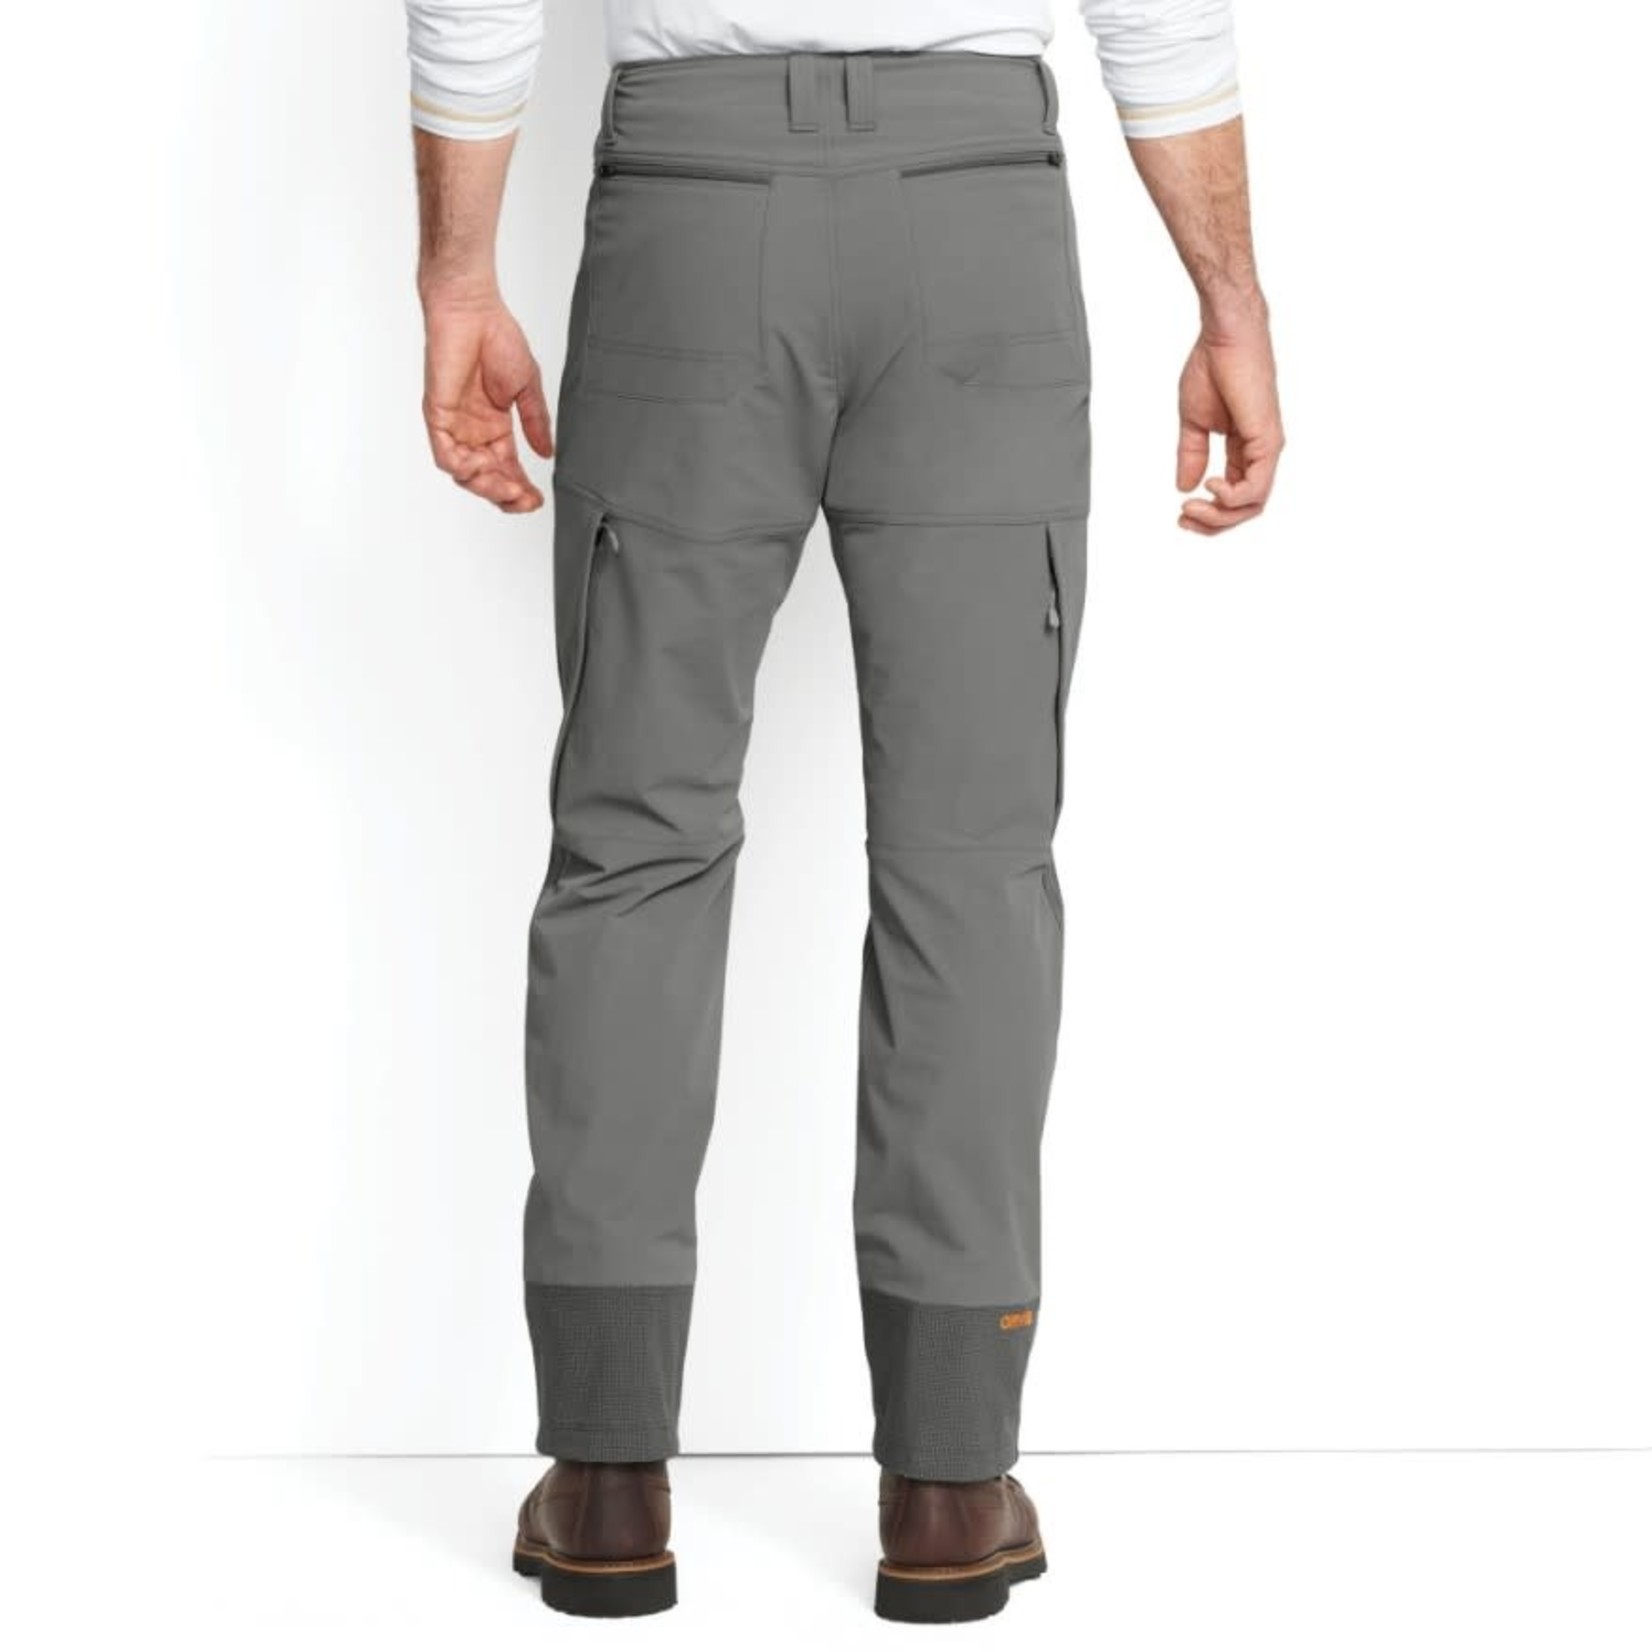 ORVIS ZIP-Pocket Trek Cargo Pants - coolgens เสื้อผ้าผู้ชาย,เสื้อผ้า  Outdoor,ชุดกีฬา,เสื้อผ้าทำงาน : Inspired by LnwShop.com